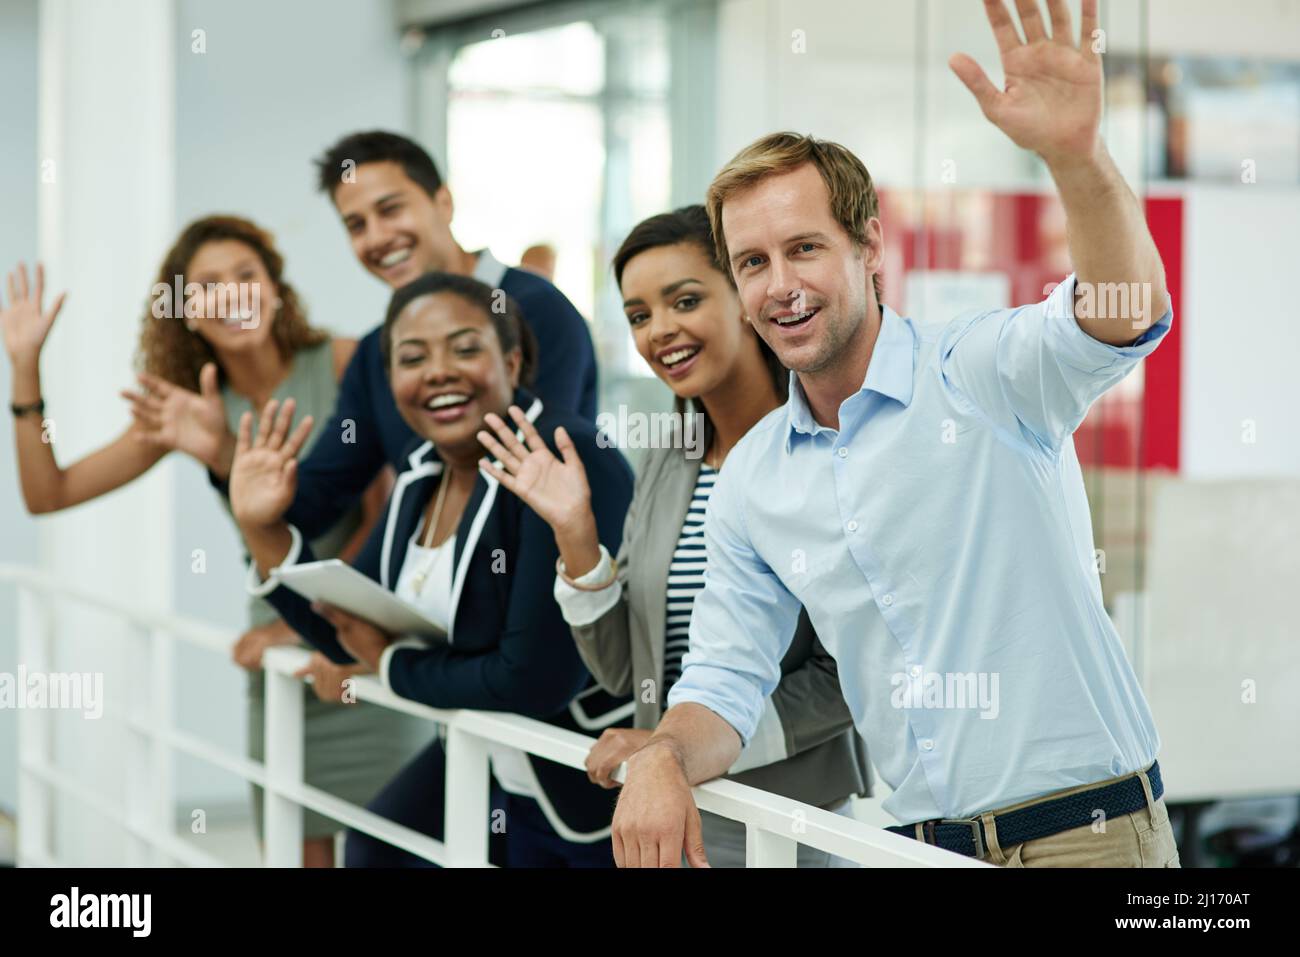 Ciao successo. Ritratto di un gruppo di colleghi sorridenti che ondeggiano mentre si appoggiano su una ringhiera in un ufficio. Foto Stock